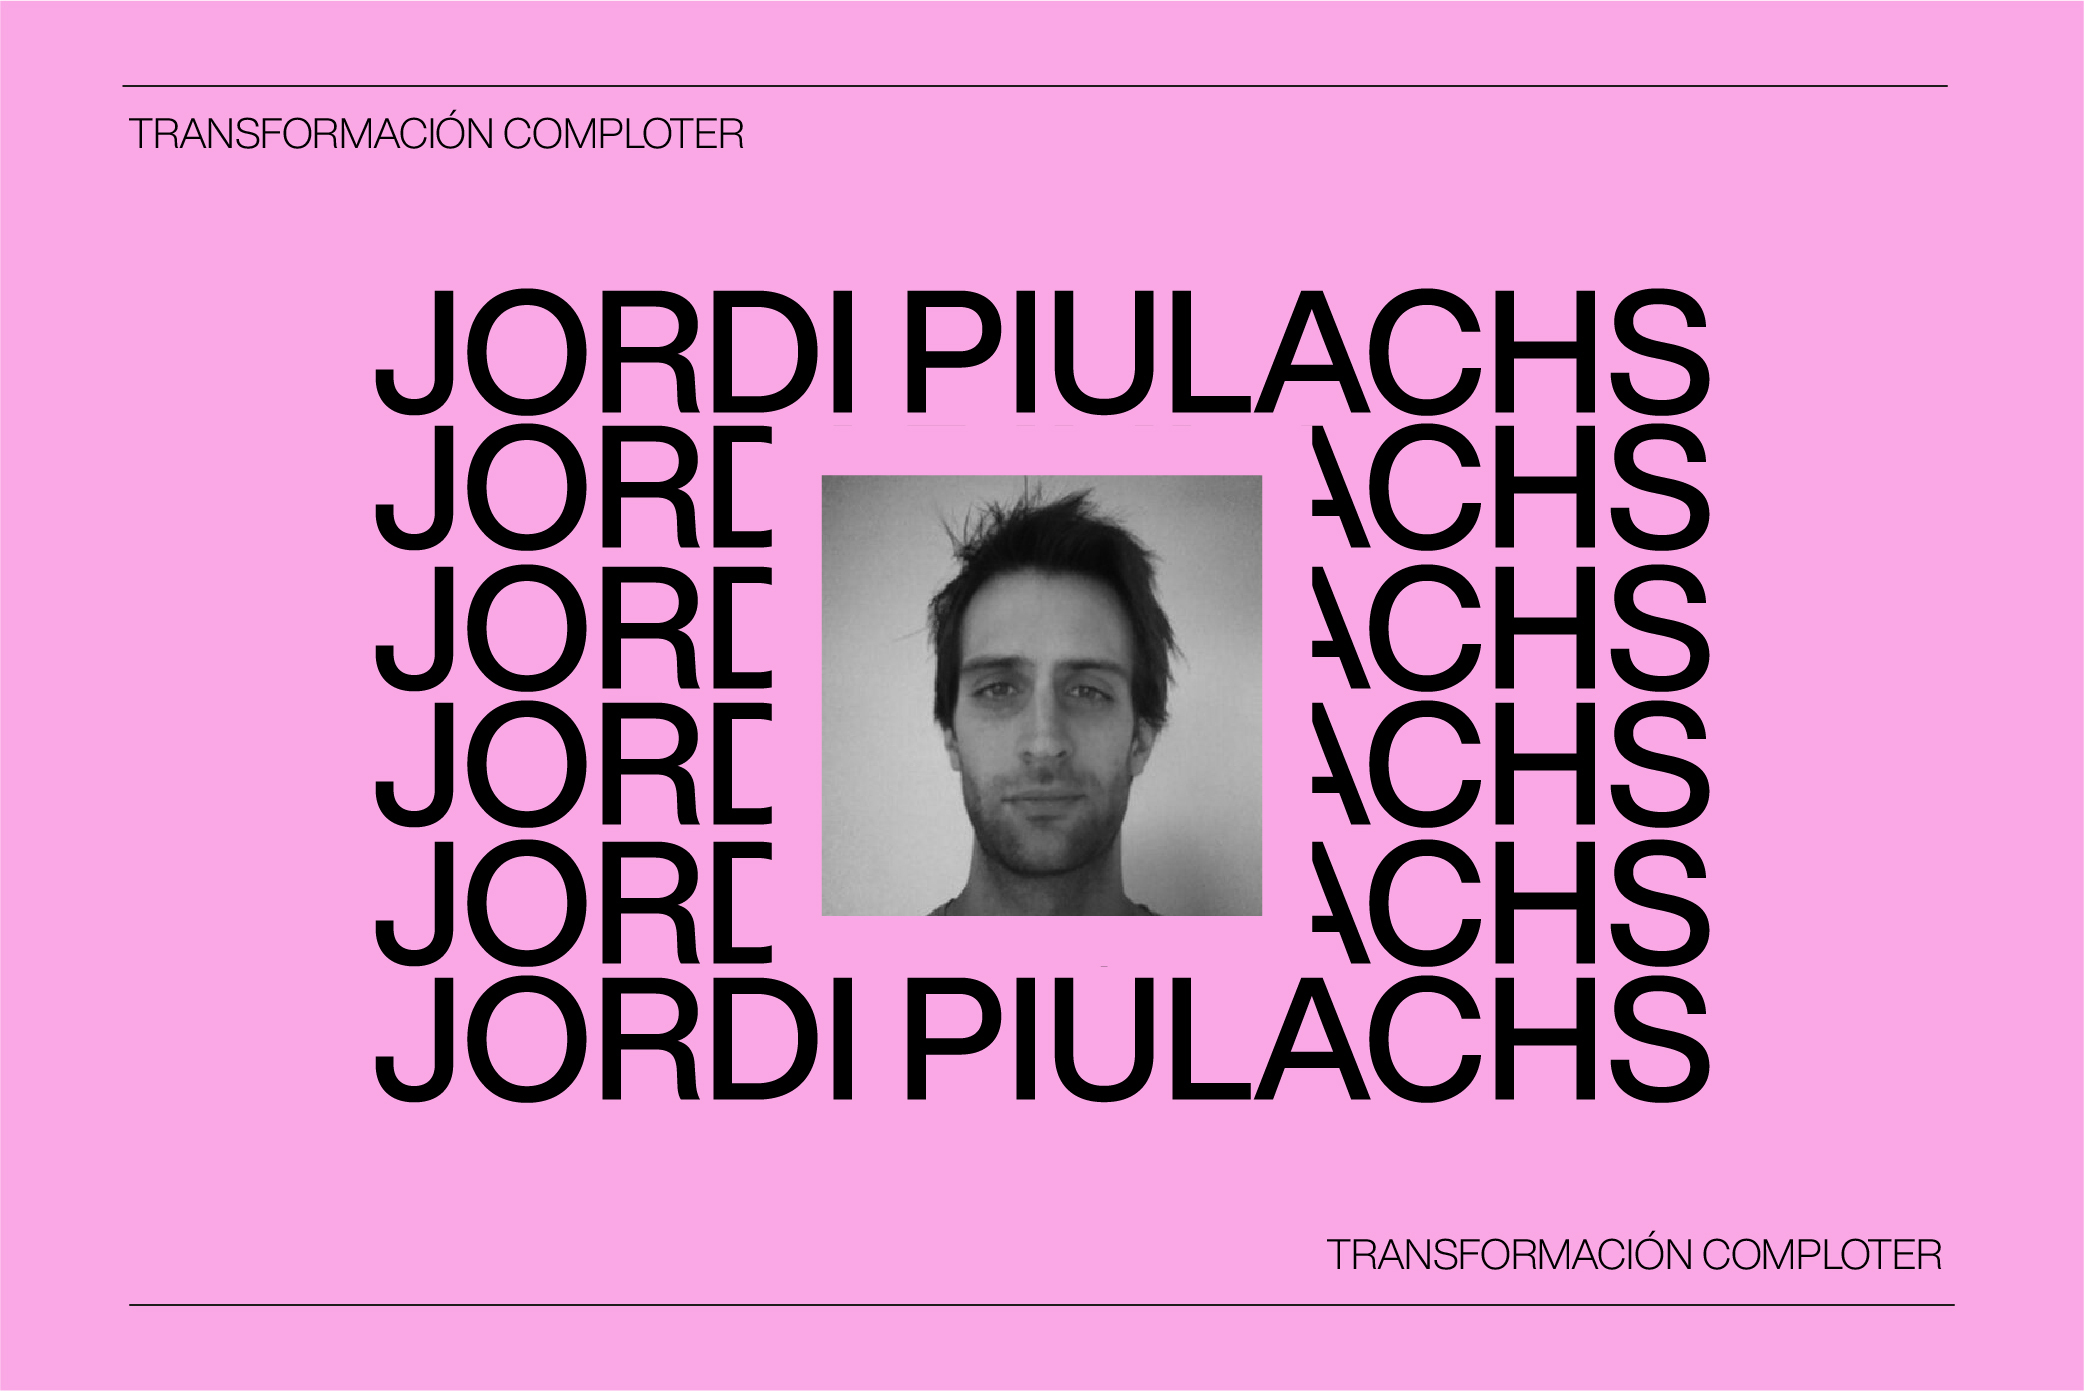 Jordi Piulachs de Evil Love y su #TransformaciónComploter